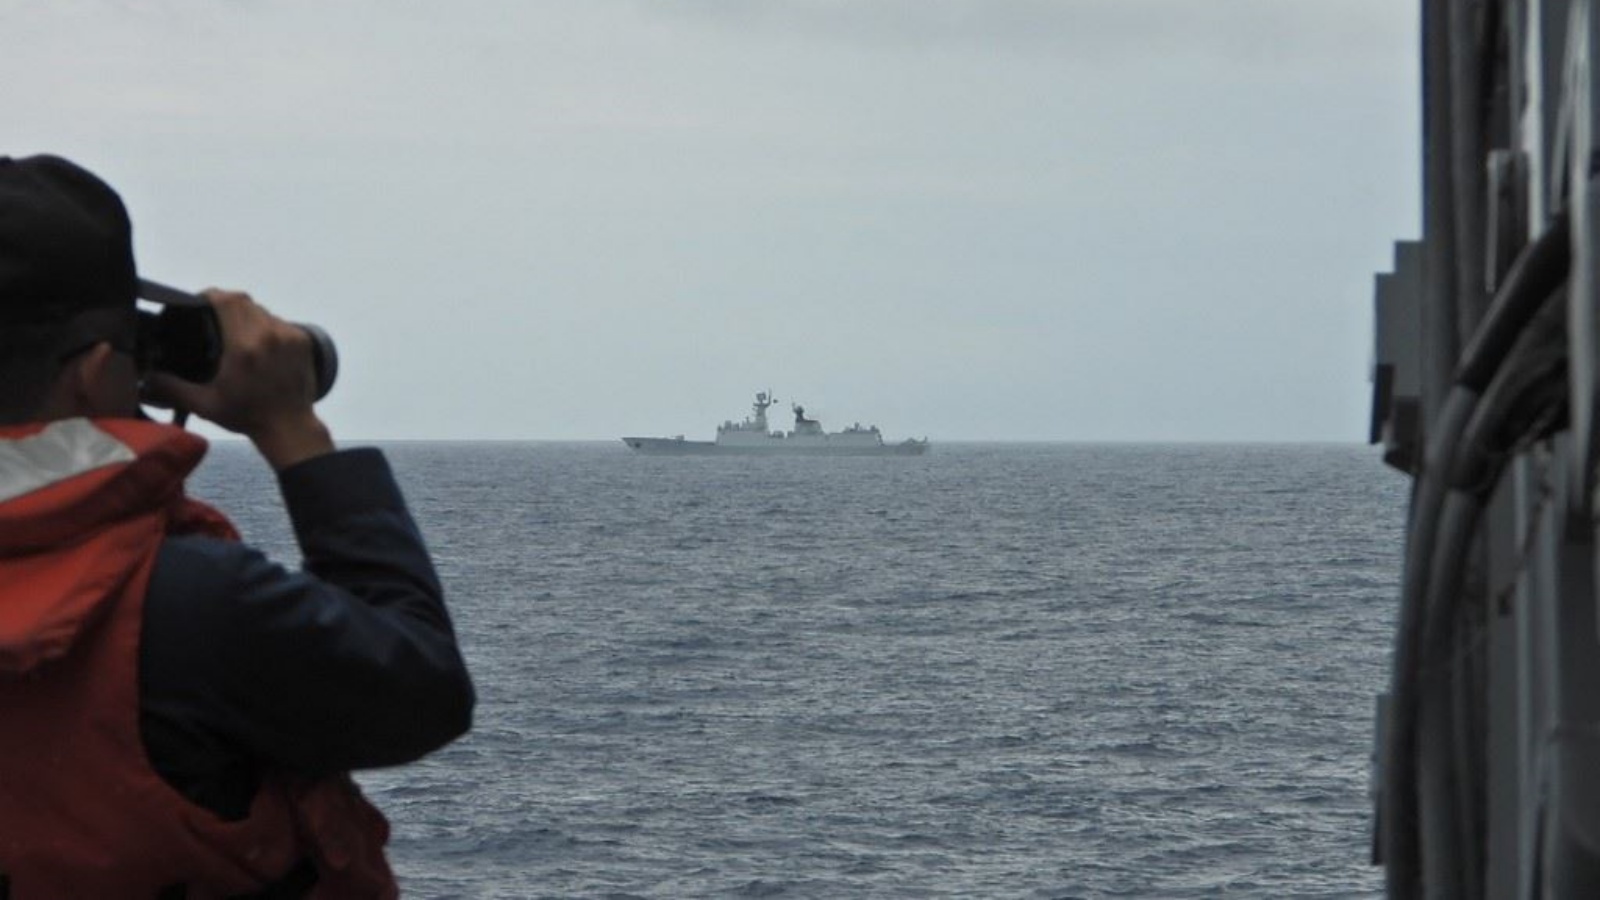 بحار من البحرية التايوانية يراقب سفينة حربية تابعة للبحرية الصينية